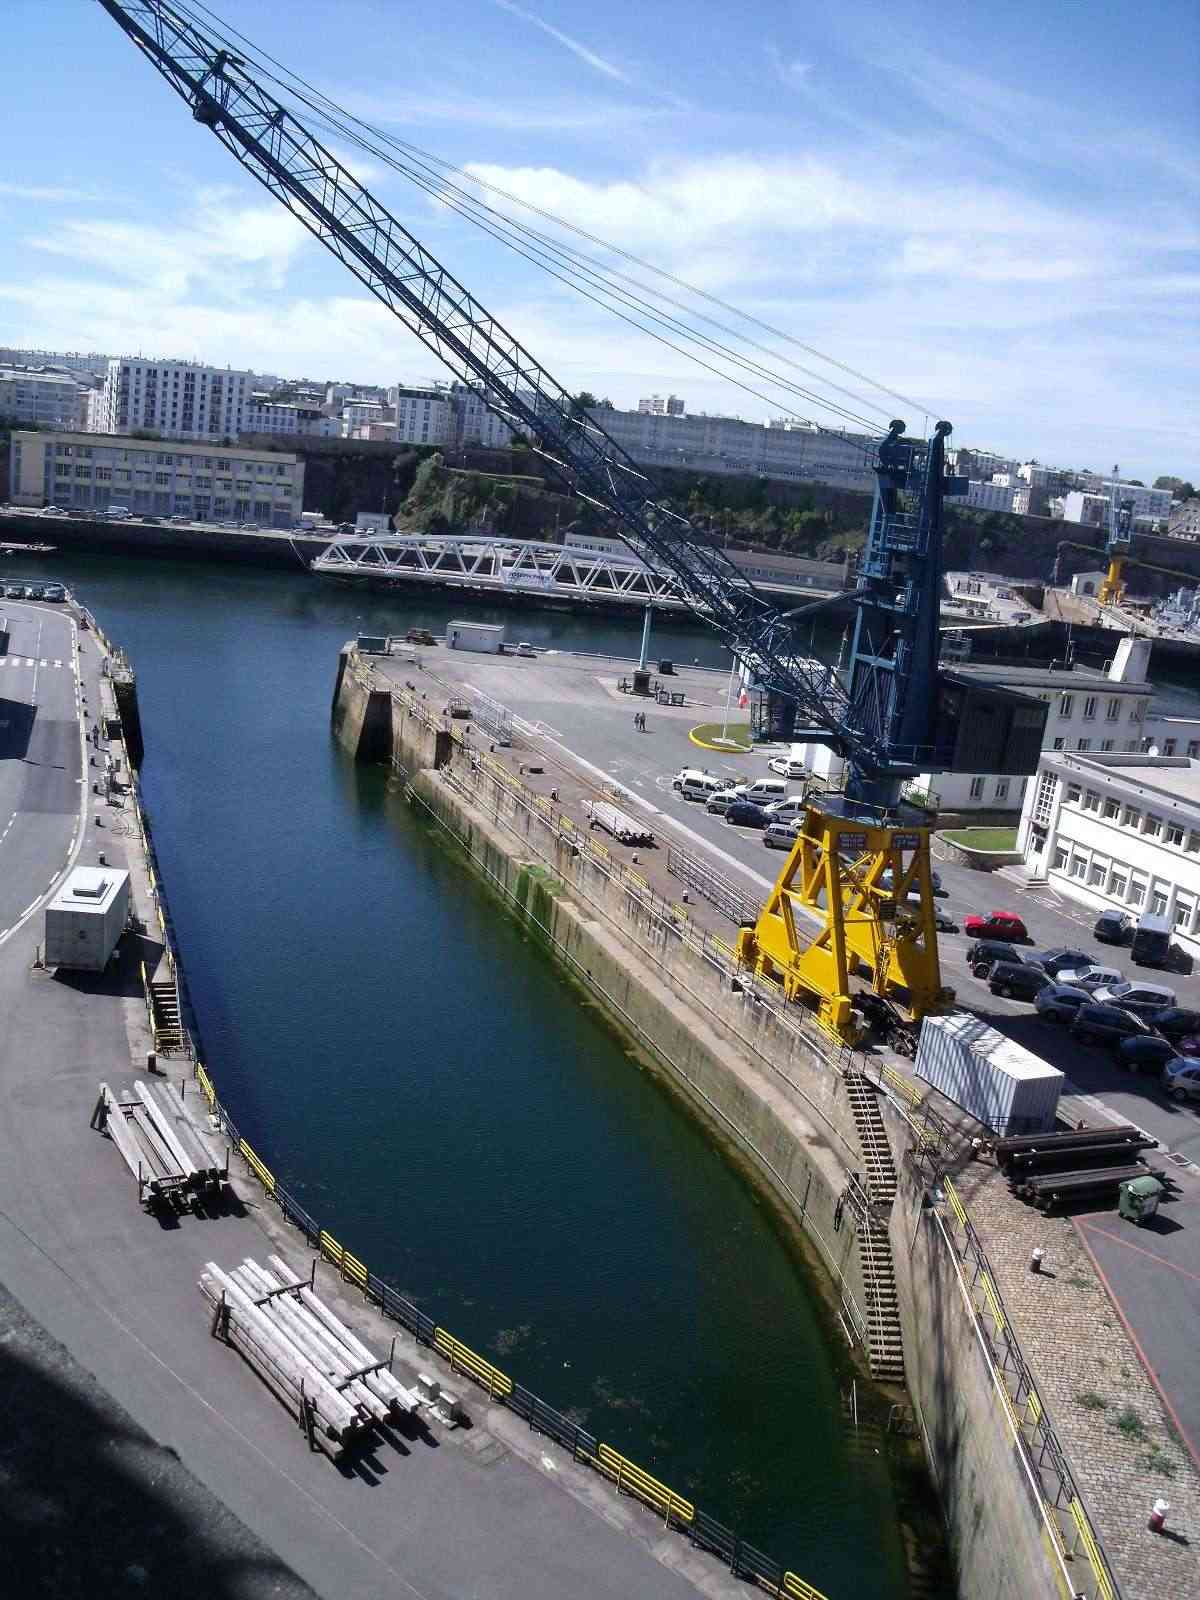 brest - [Les ports militaires de métropole] Port de Brest - TOME 1 - Page 26 Mai11_74